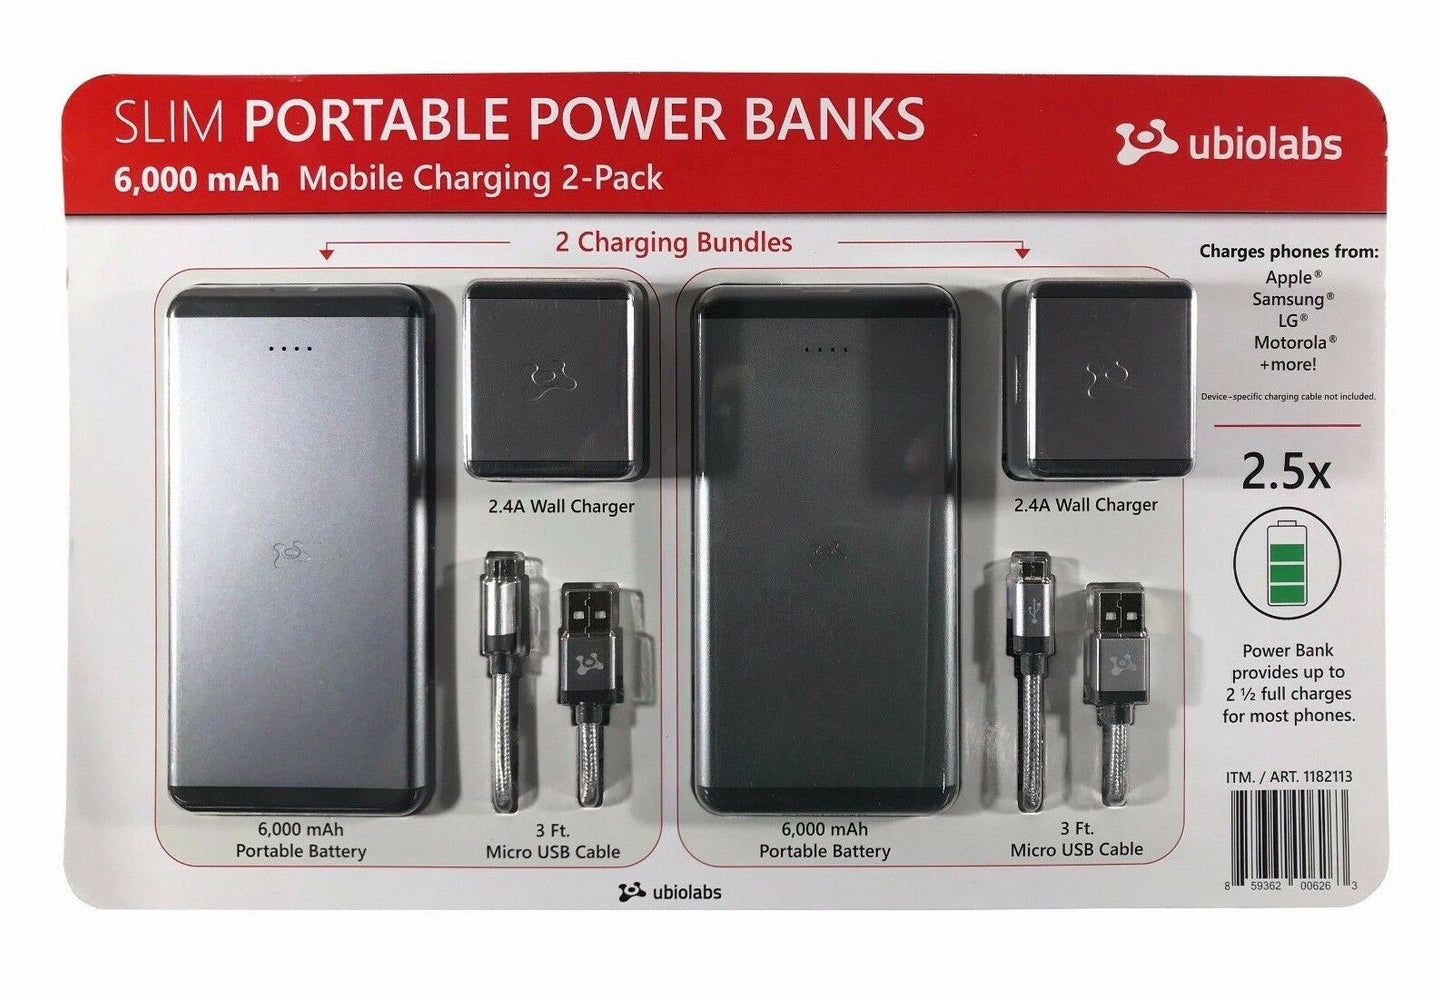 Ubiolabs Slim Portable Power Banks 6,000 mAh Mobile Charging 2-Pack